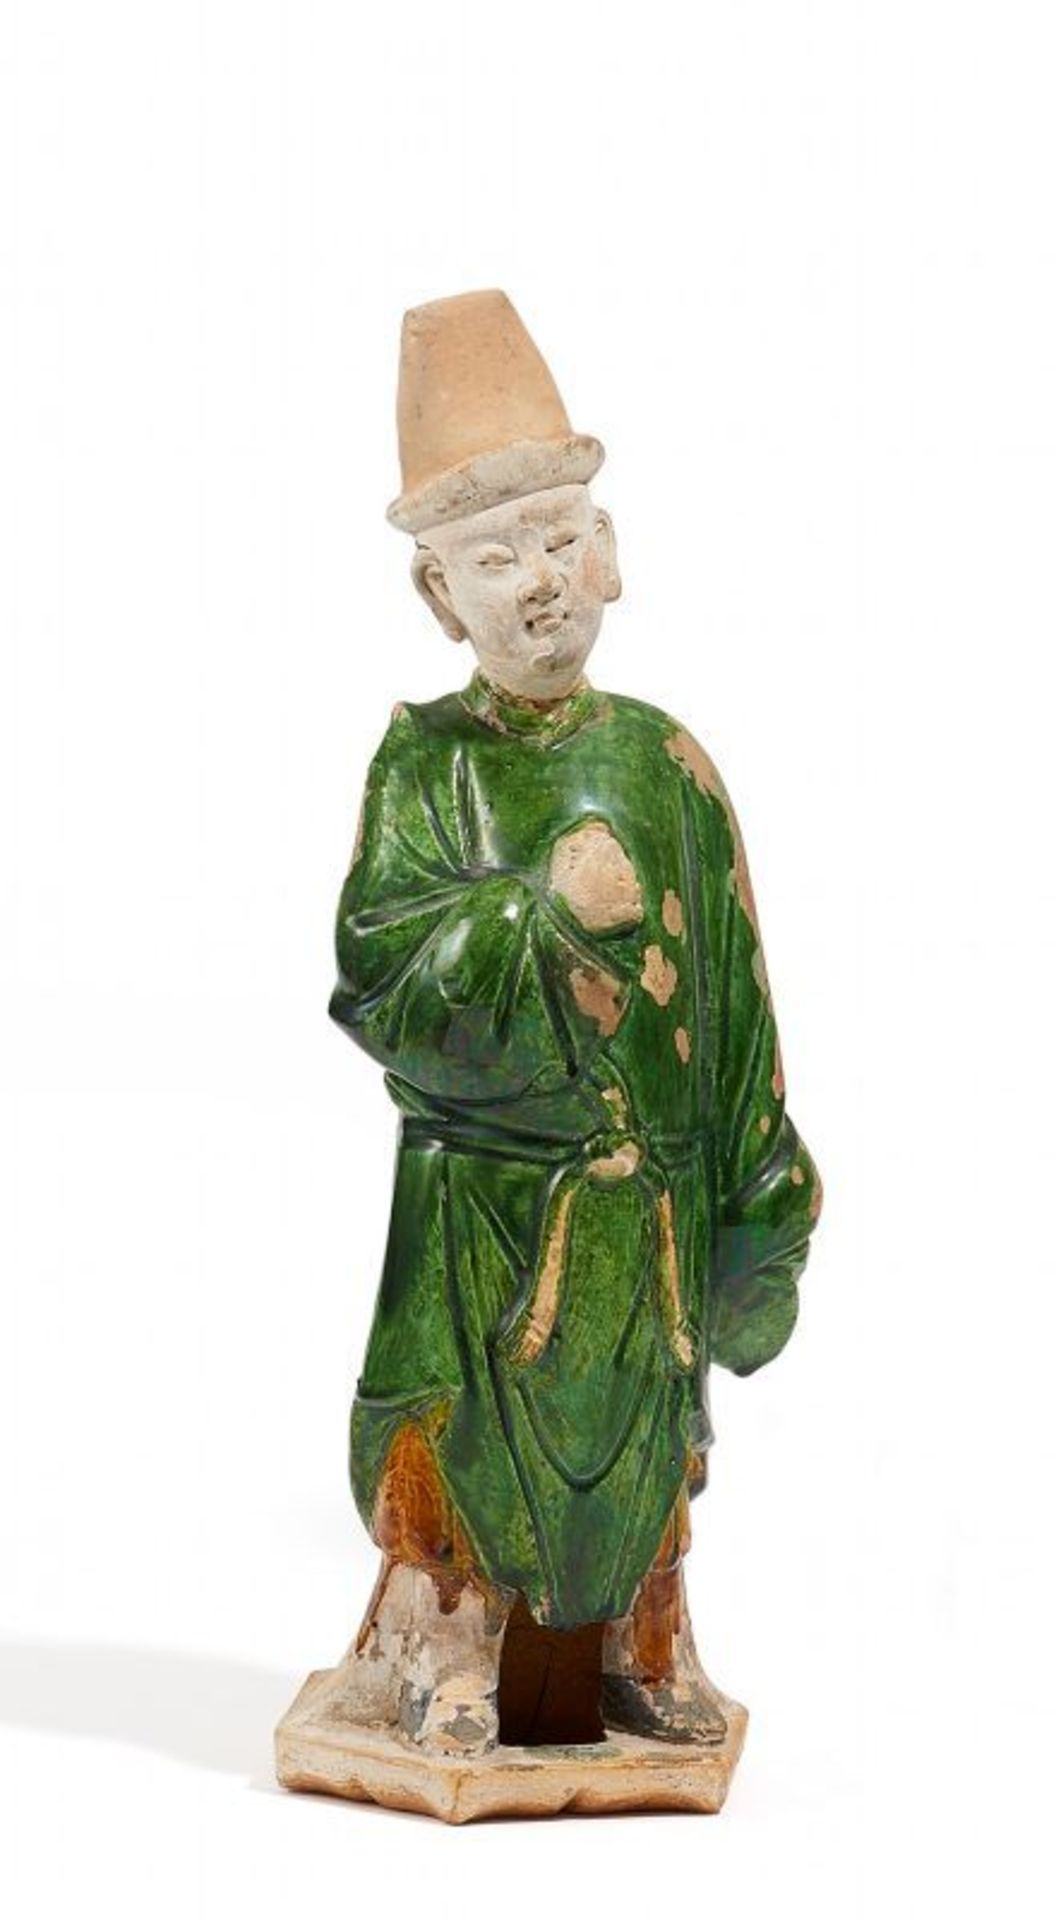 PFERDEKNECHT MIT HOHEM HUT. China. Ming-Dynastie. Keramik mit grüner und bernsteingelber Glasur, - Image 2 of 2